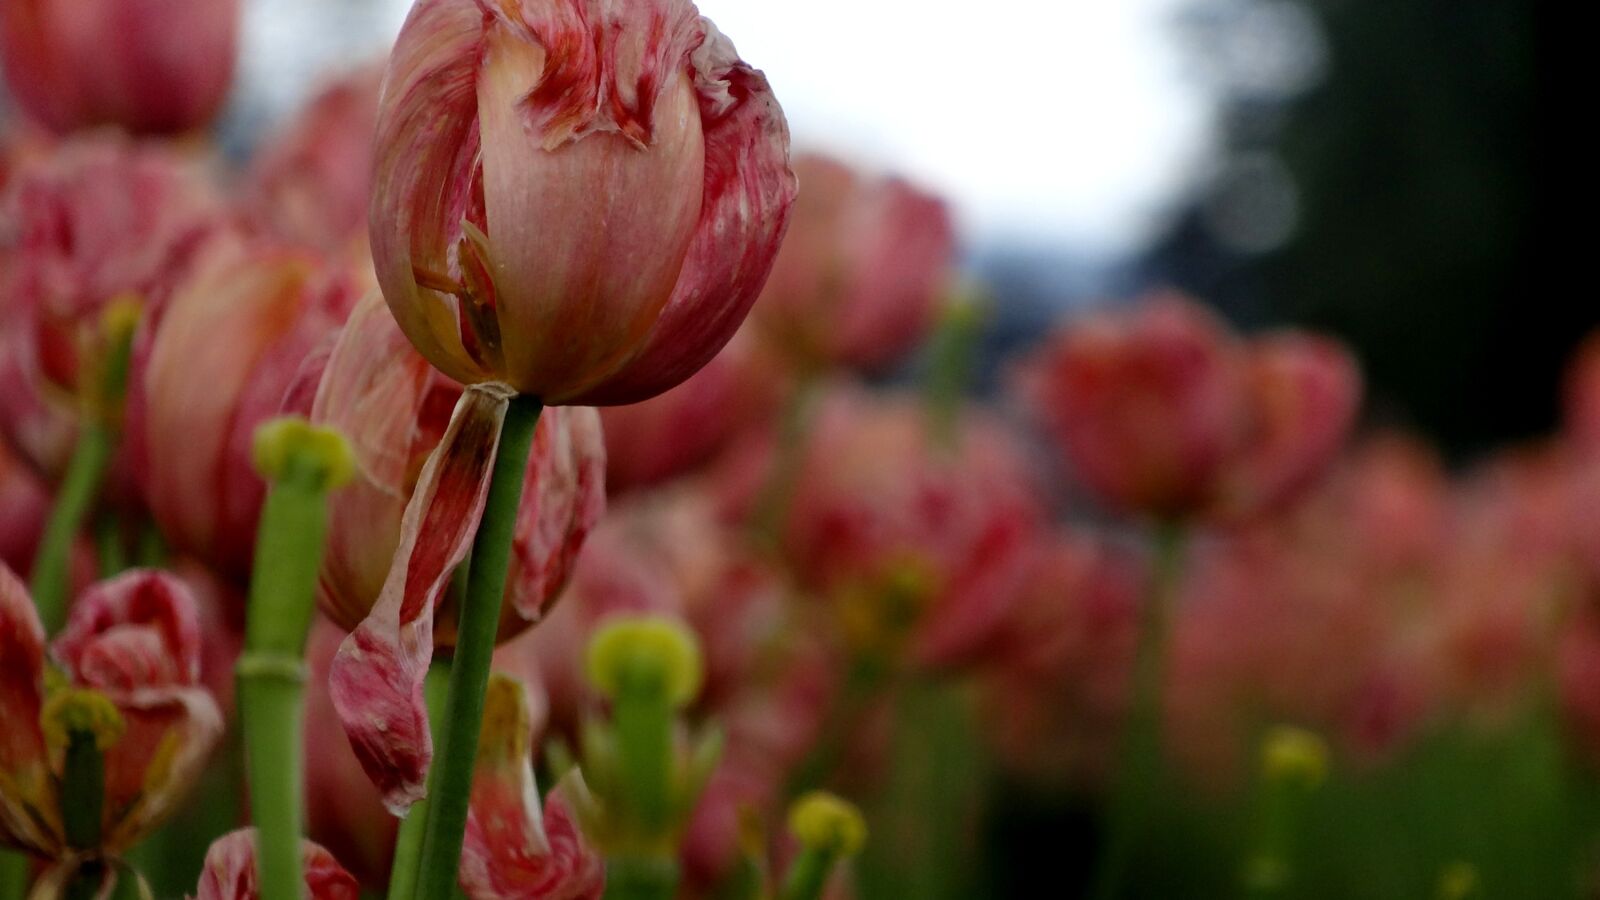 Sony Cyber-shot DSC-HX20V sample photo. Nature, flower, flora photography